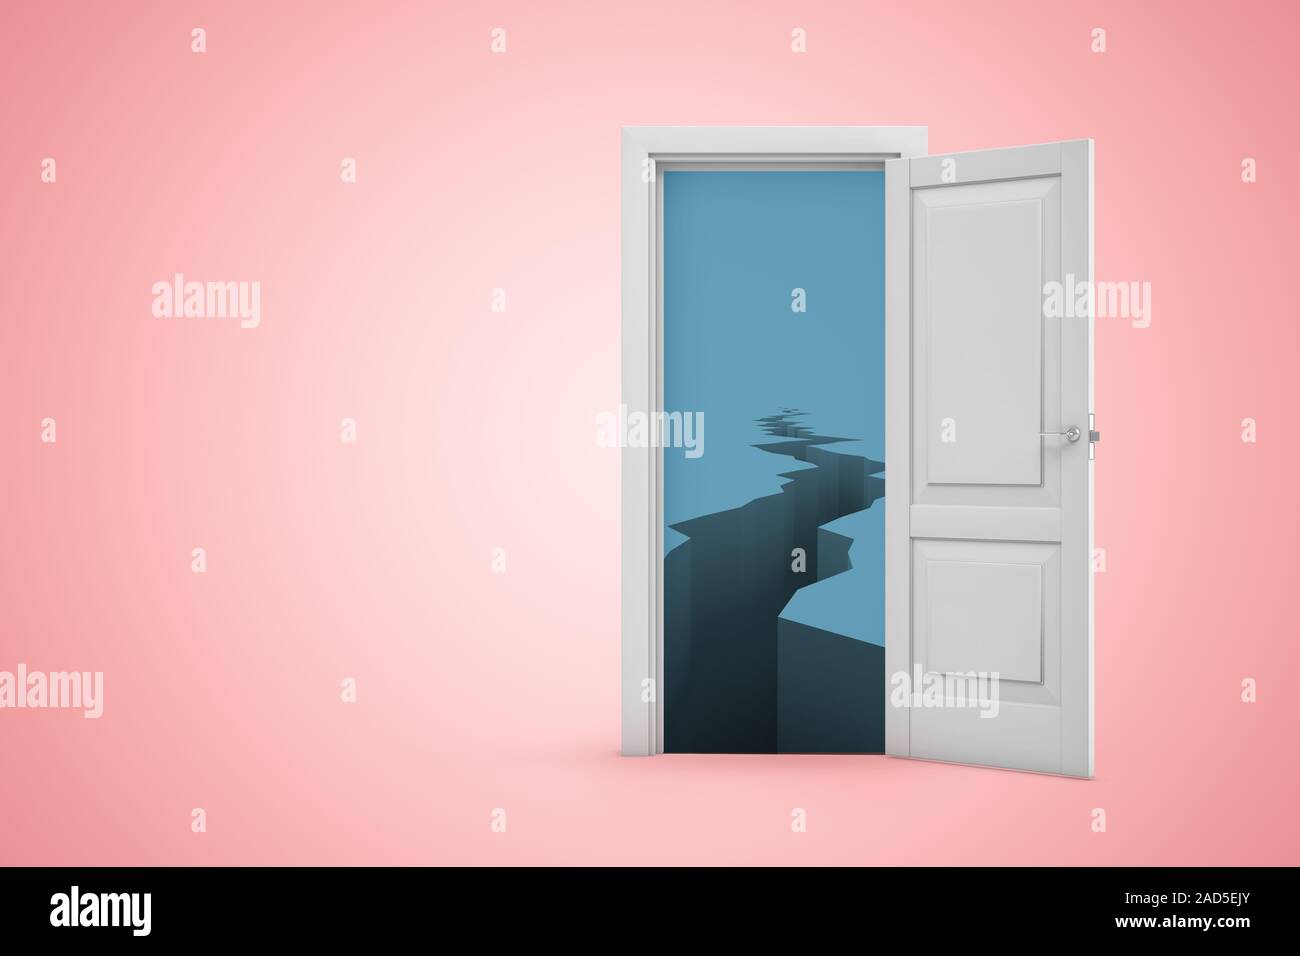 3D rendering de puerta abierta en rosa copyspace degradado con fondo oscuro y frío hielo crevasse visto a través de la puerta. Diseño gráfico. Enfrentando desafíos. Glob Foto de stock